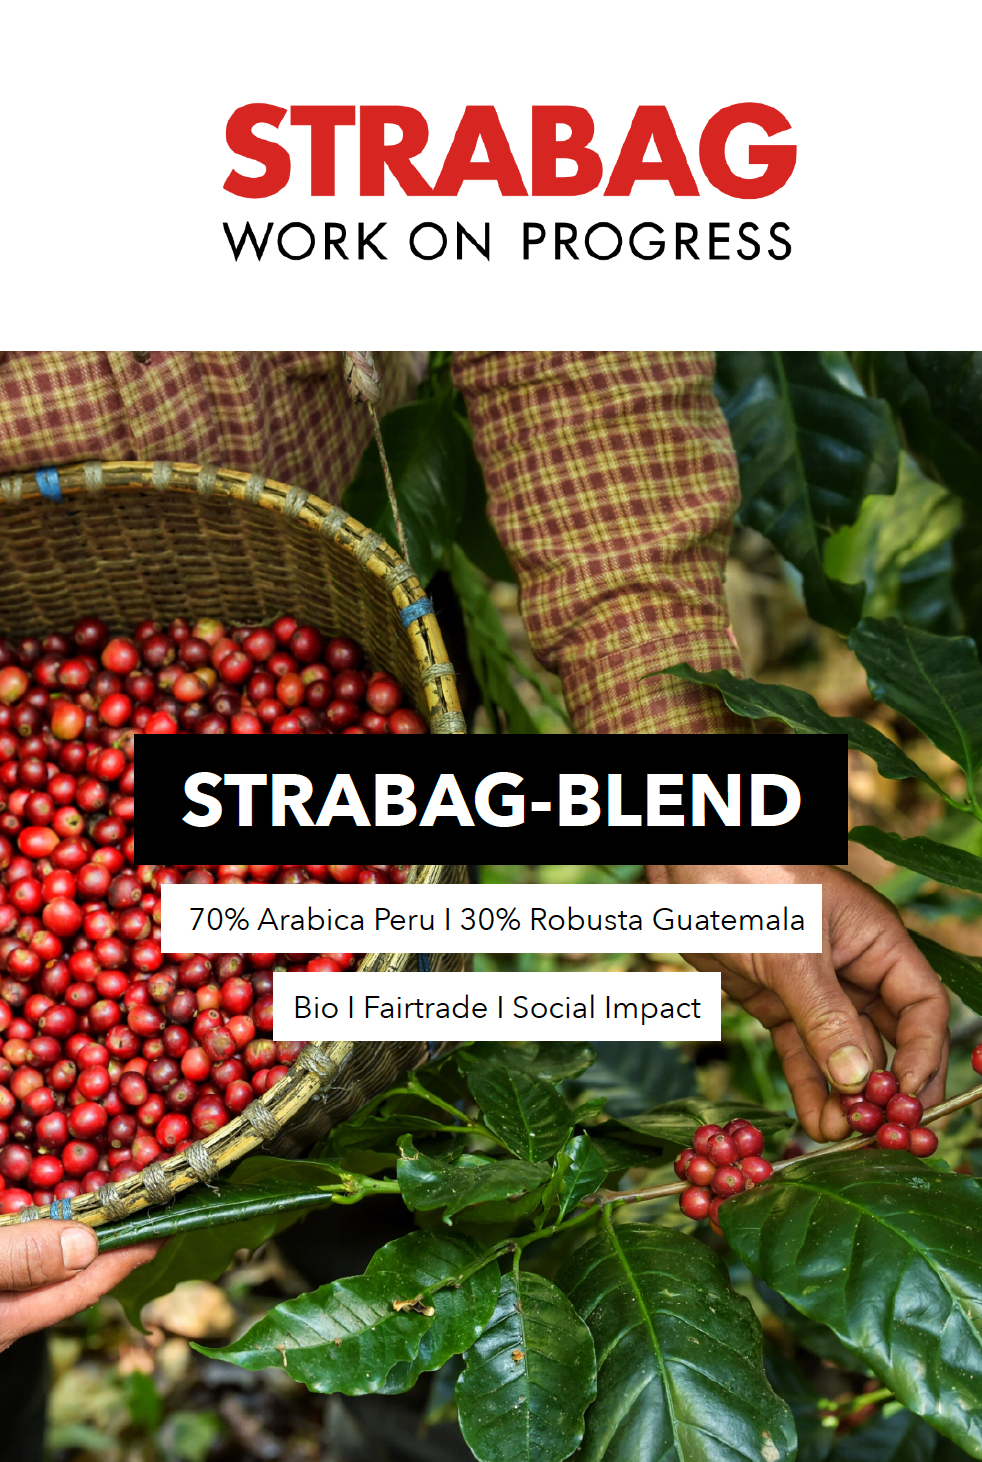 Etikett des STRABAG-BLEND Kaffees mit roten Kaffeekirschen und Händen beim Pflücken. Der Kaffee besteht aus 70% Arabica aus Peru und 30% Robusta aus Guatemala, und ist Bio, Fairtrade und sozial nachhaltig.